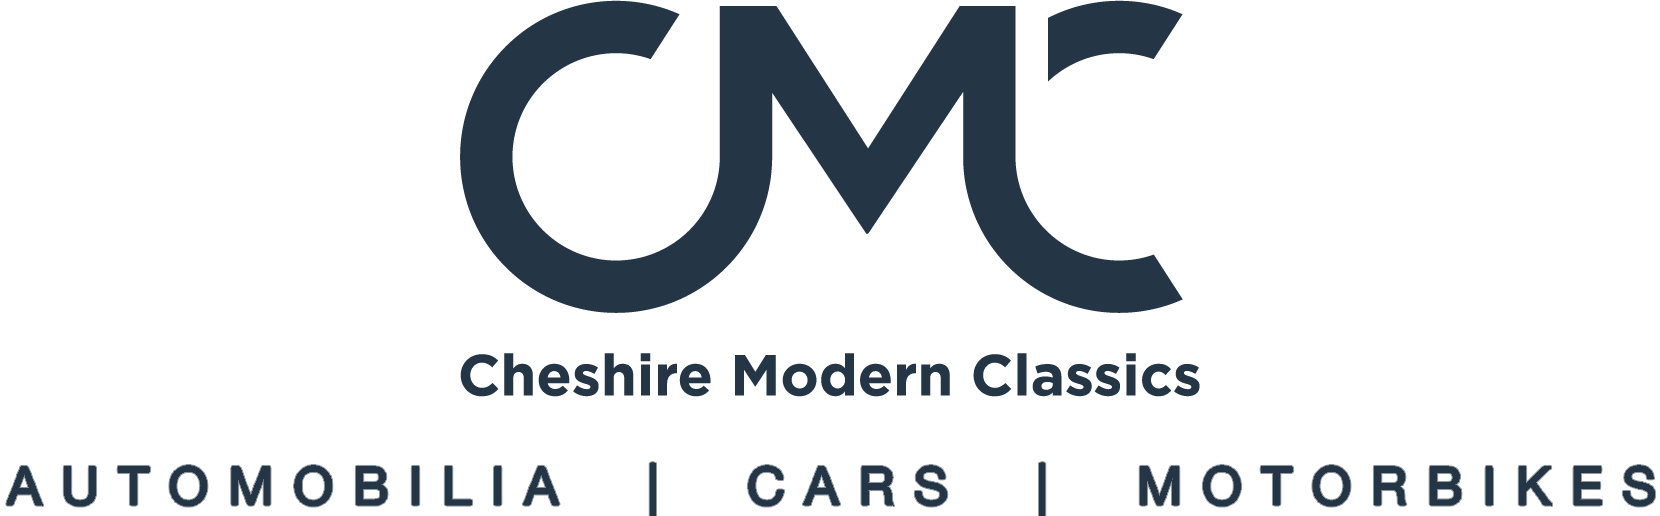 Cheshire Modern Classics